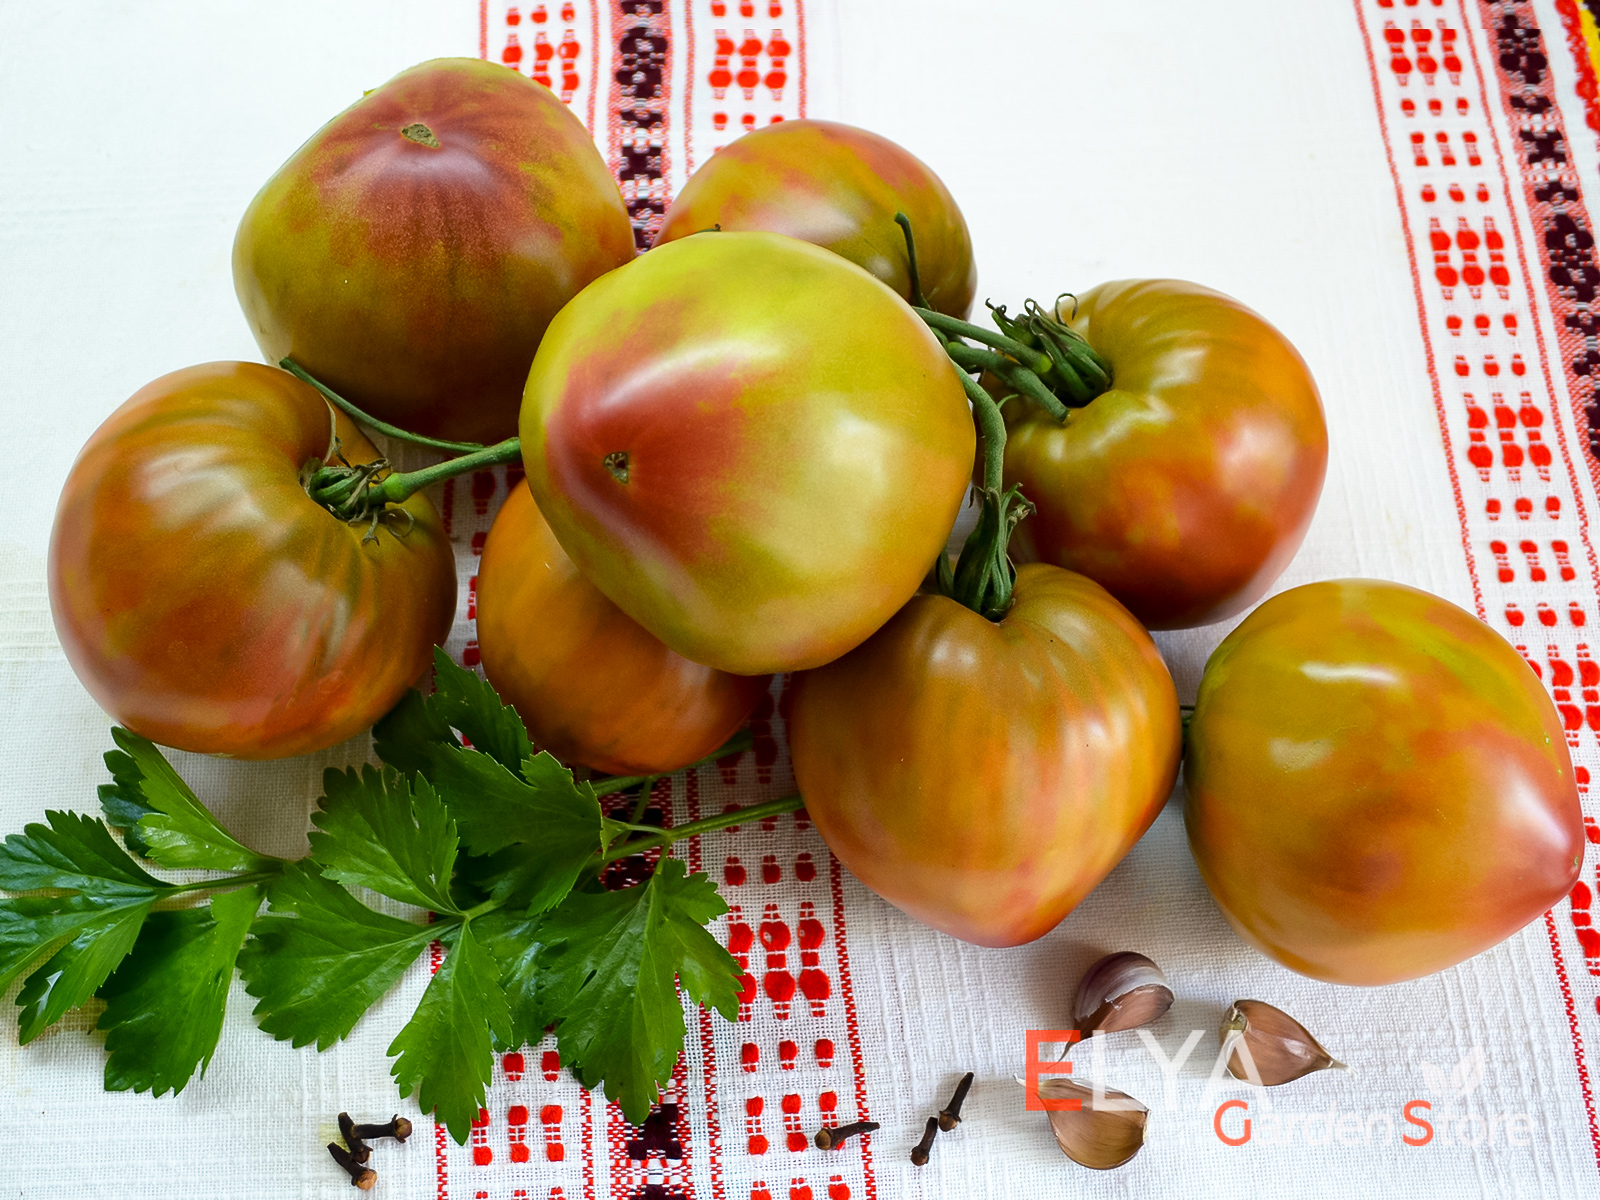 Коллекционный сорт томата Тайга - необычный сладкий вкус с легкой остротой, отличная урожайность - фото